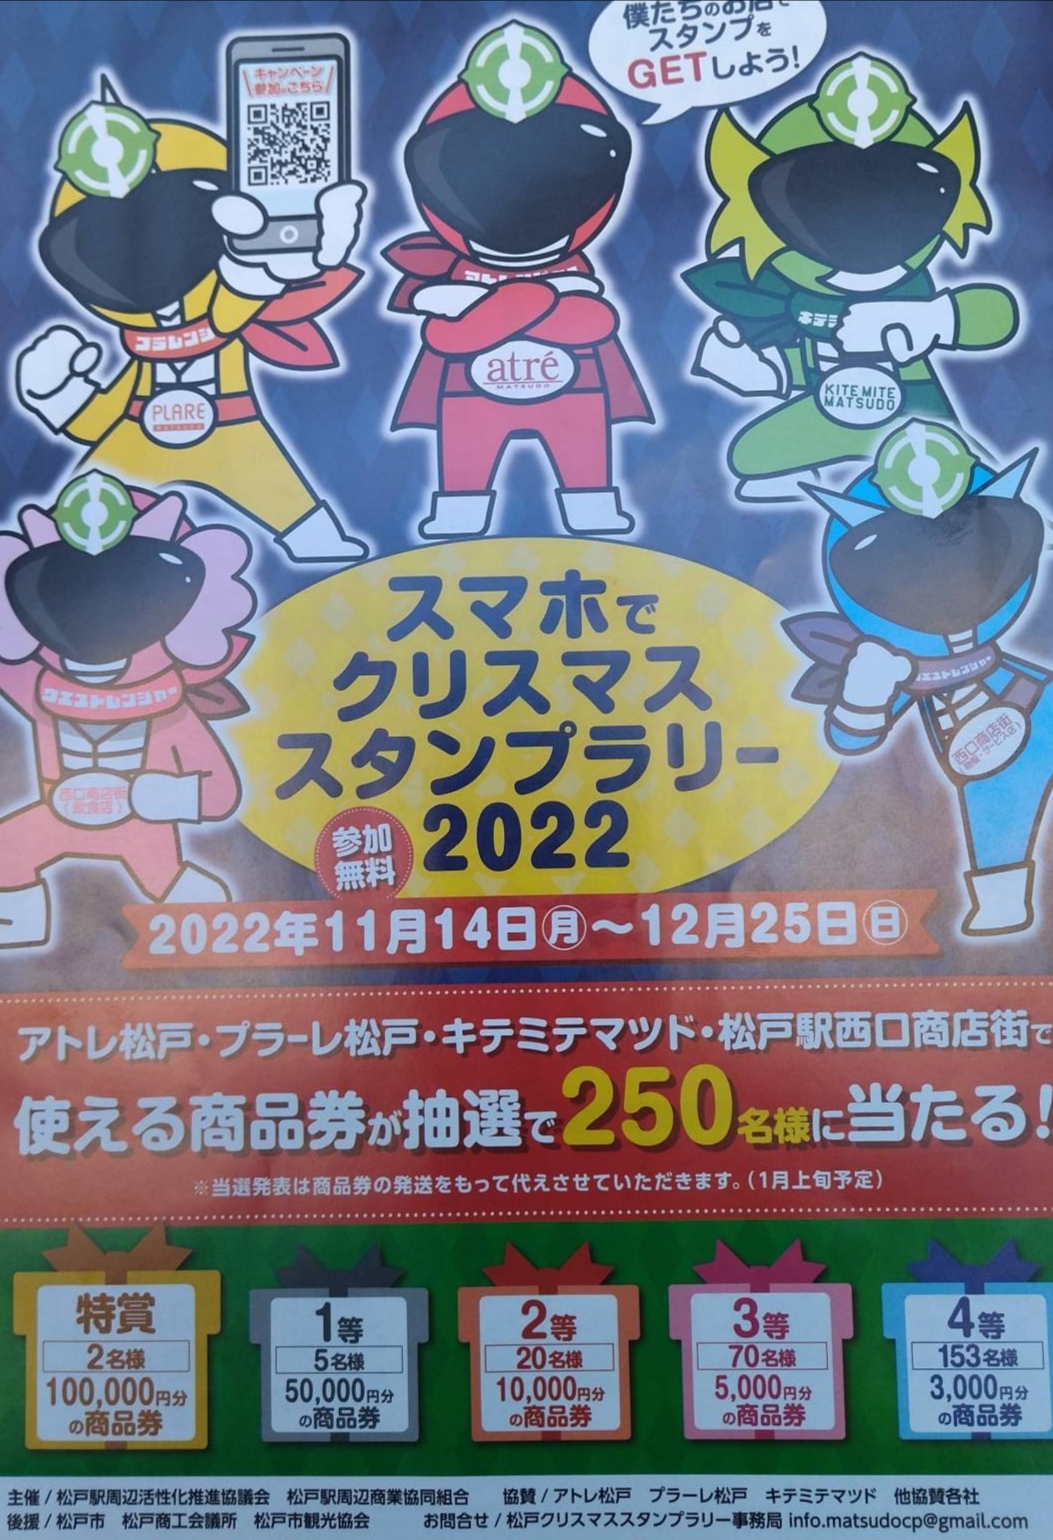 クリスマス スタンプラリー松戸駅前特賞10万円商品券